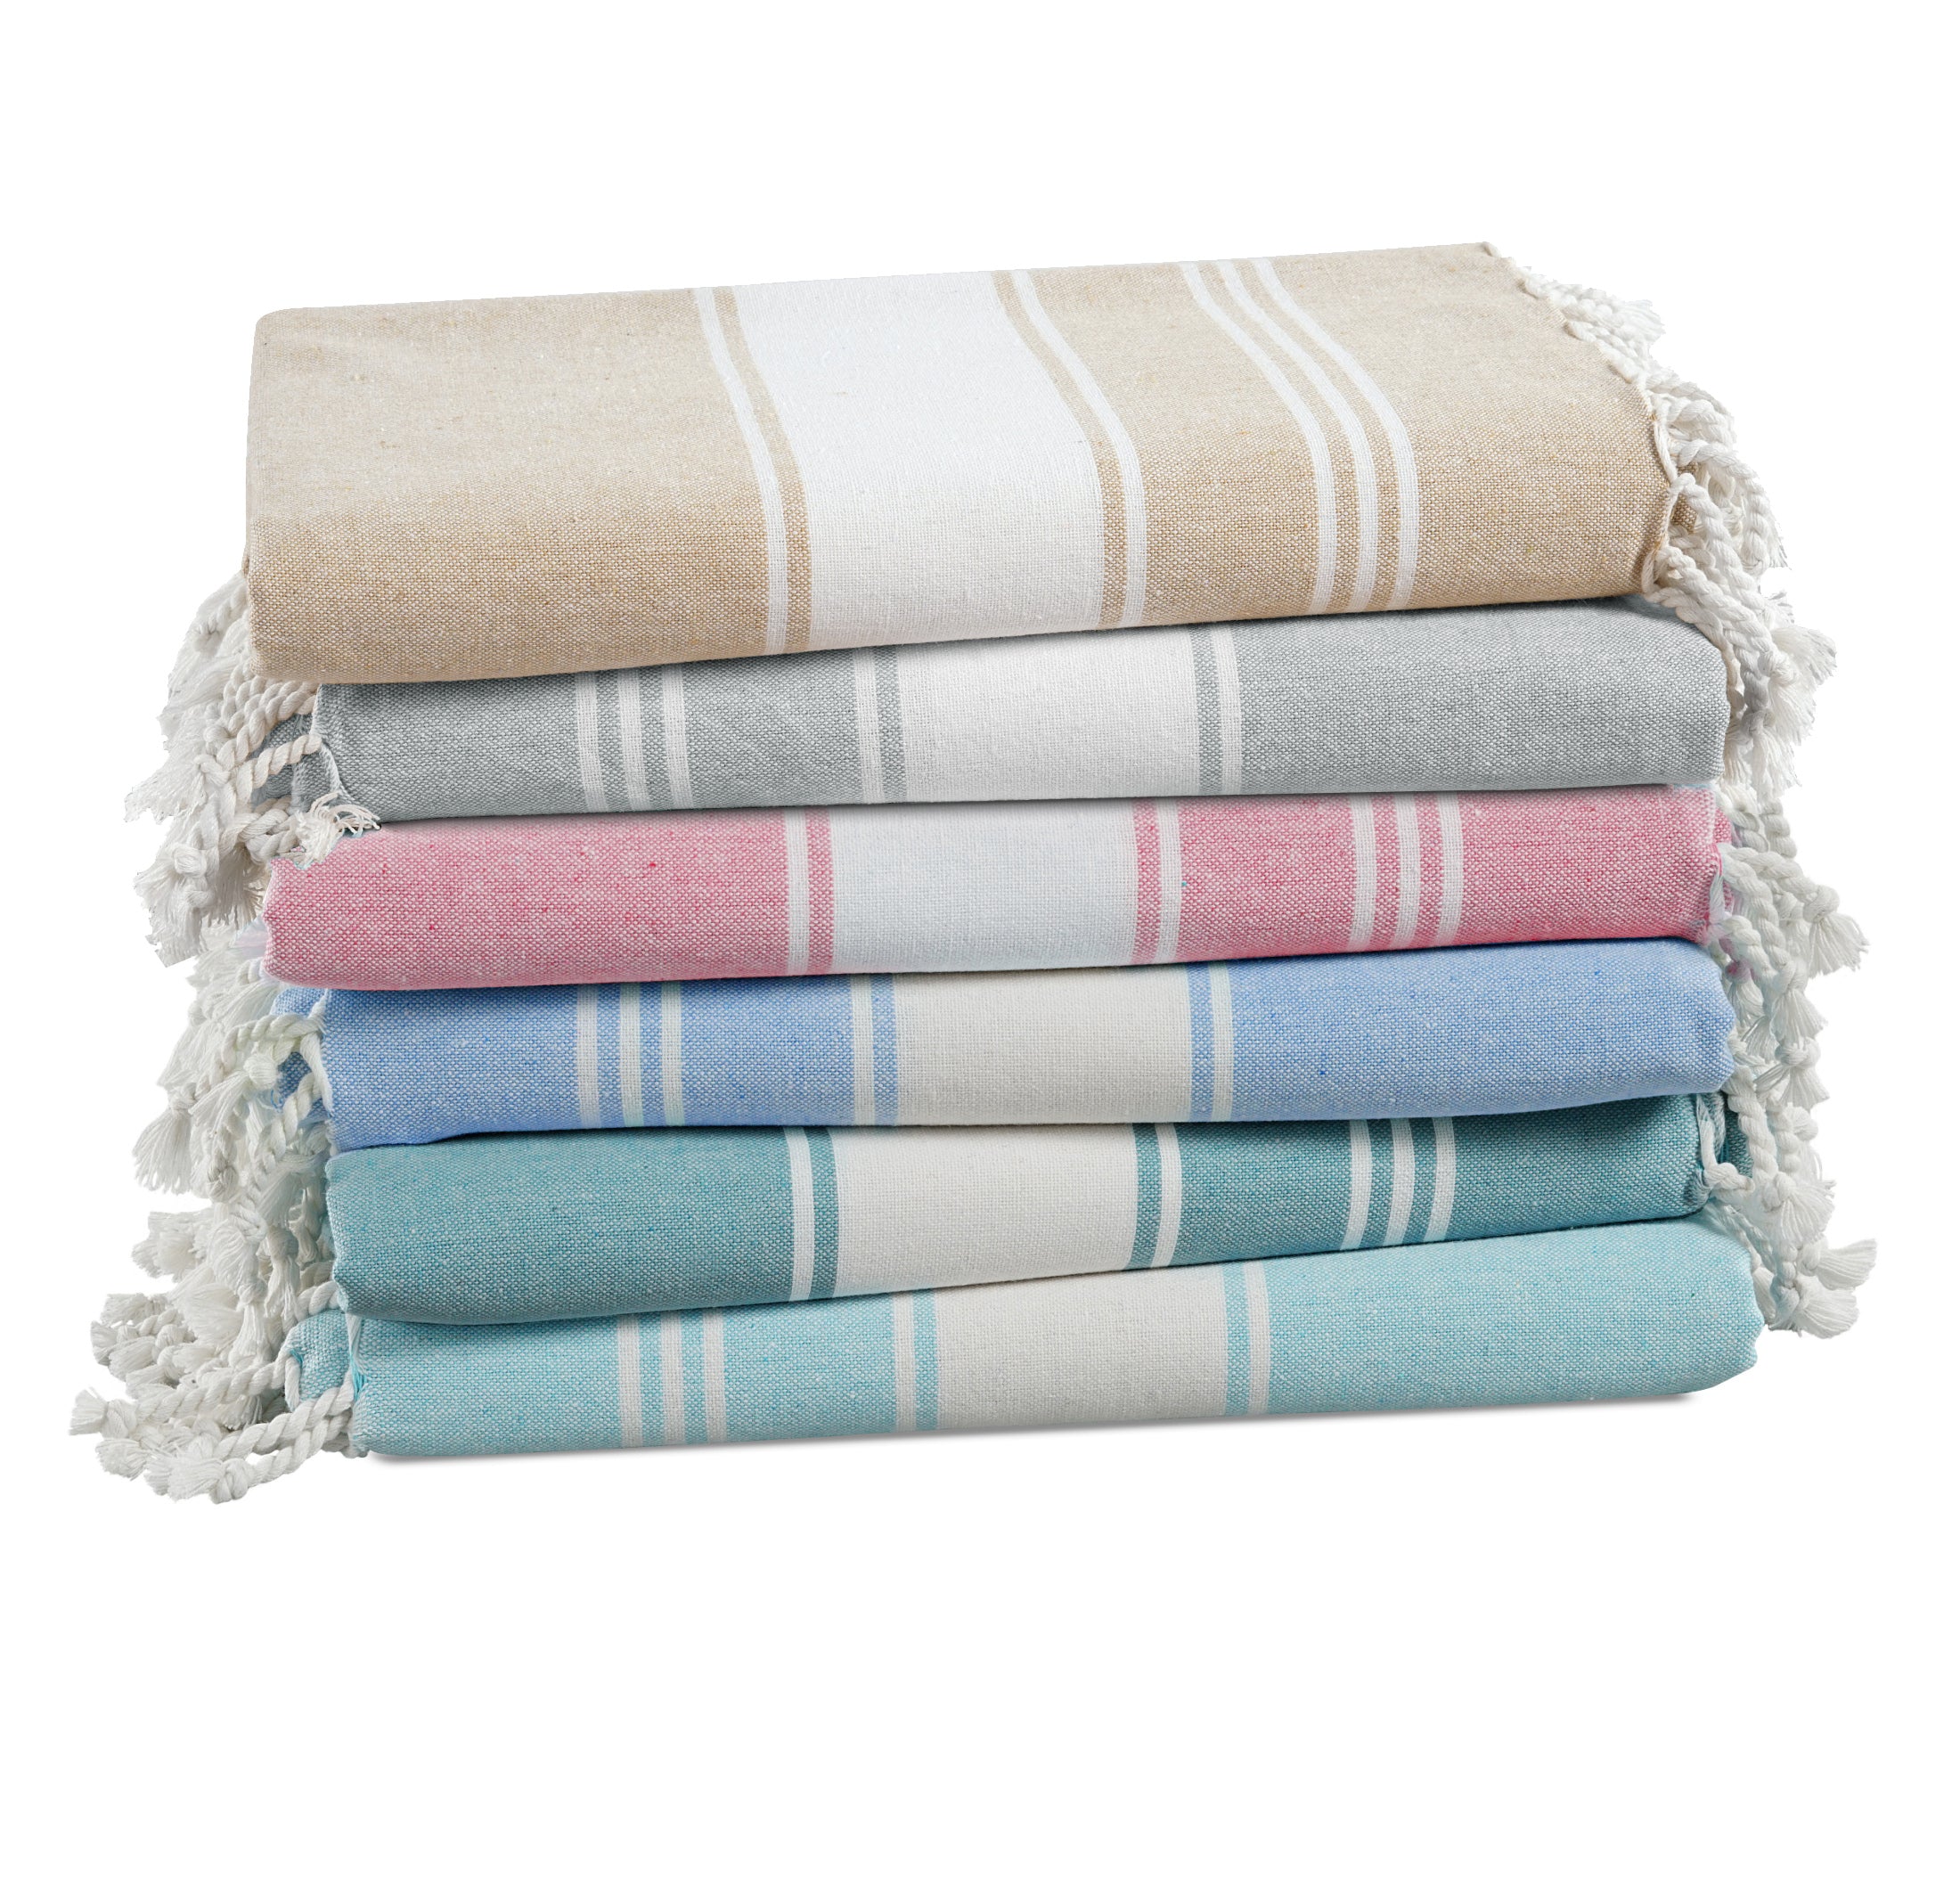 Set of 6 100% Cotton Chambray Turkish Beach Towels - Multi Pk1